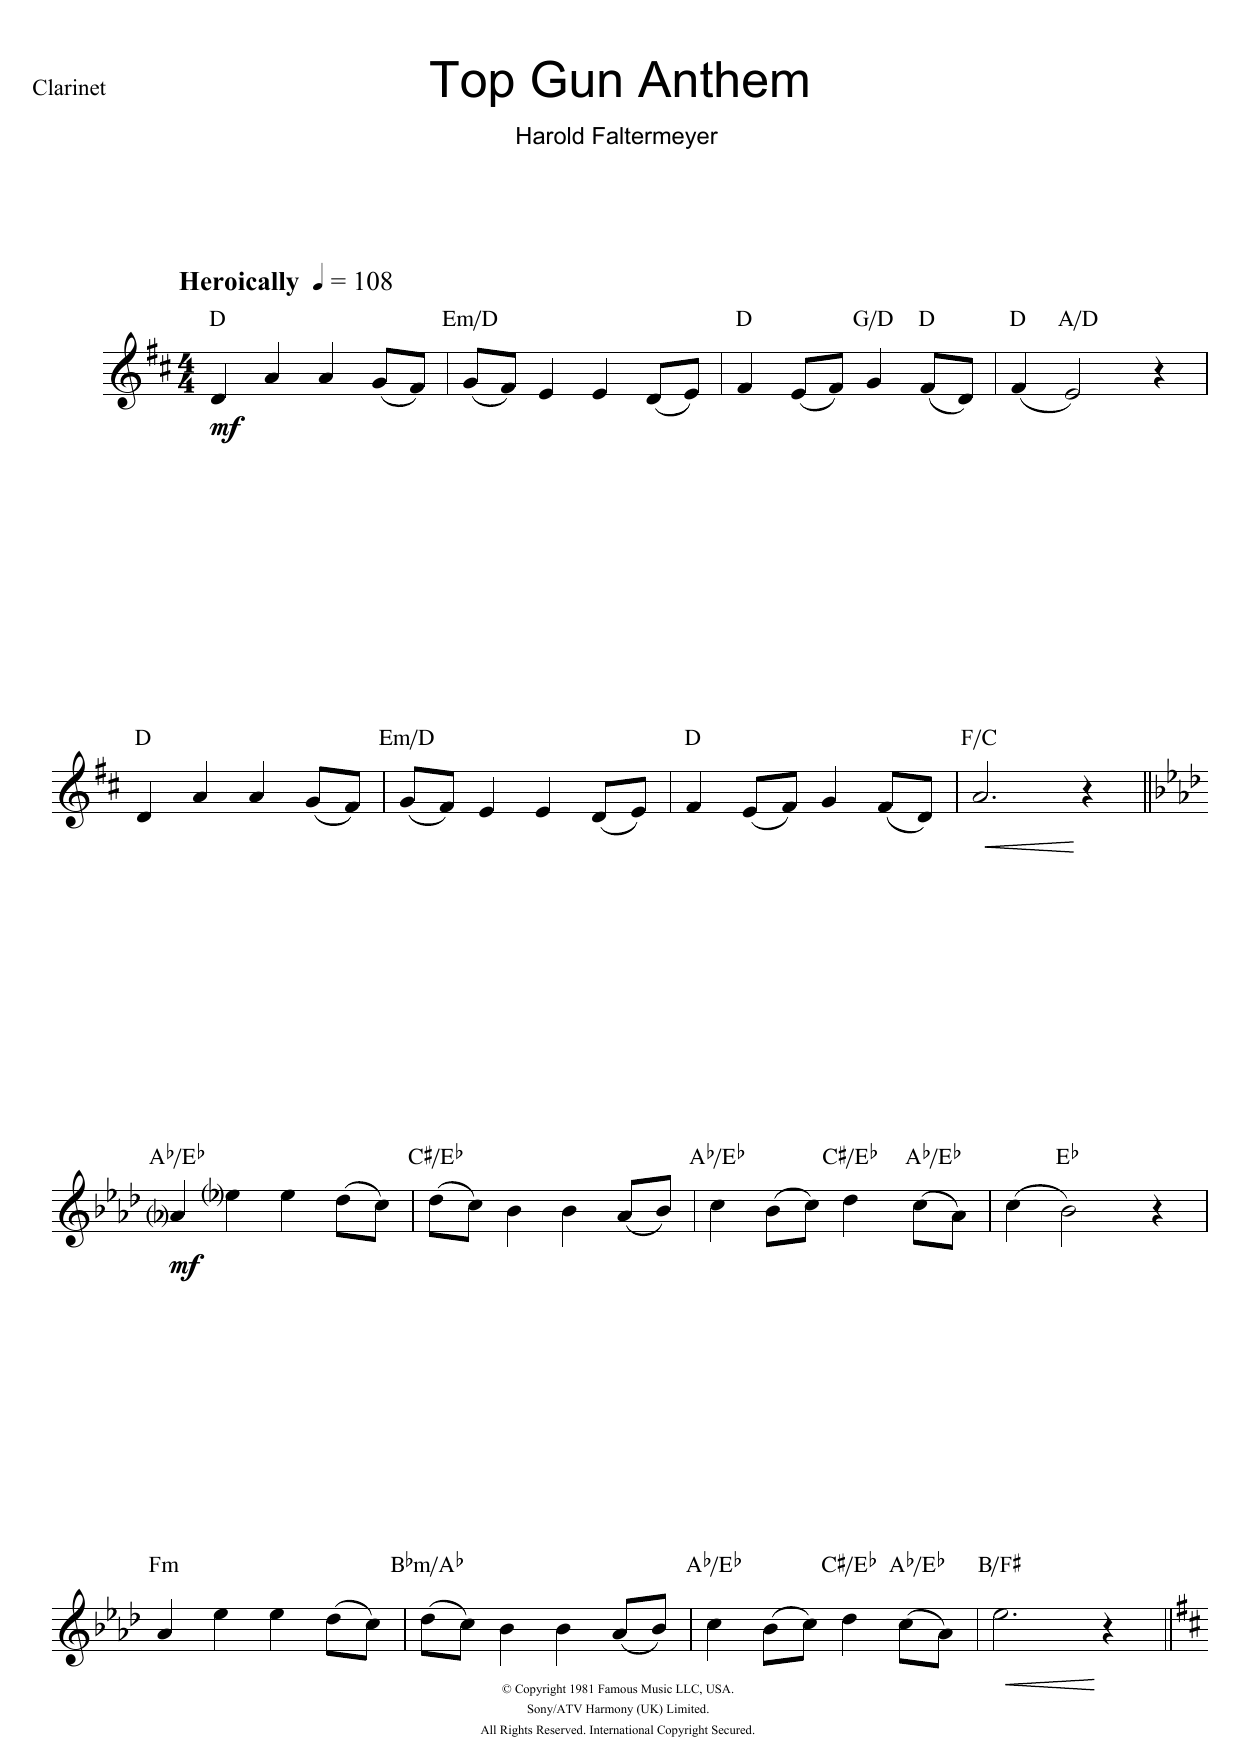 Harold Faltermeyer Top Gun (Anthem) Sheet Music Notes & Chords for Alto Saxophone - Download or Print PDF